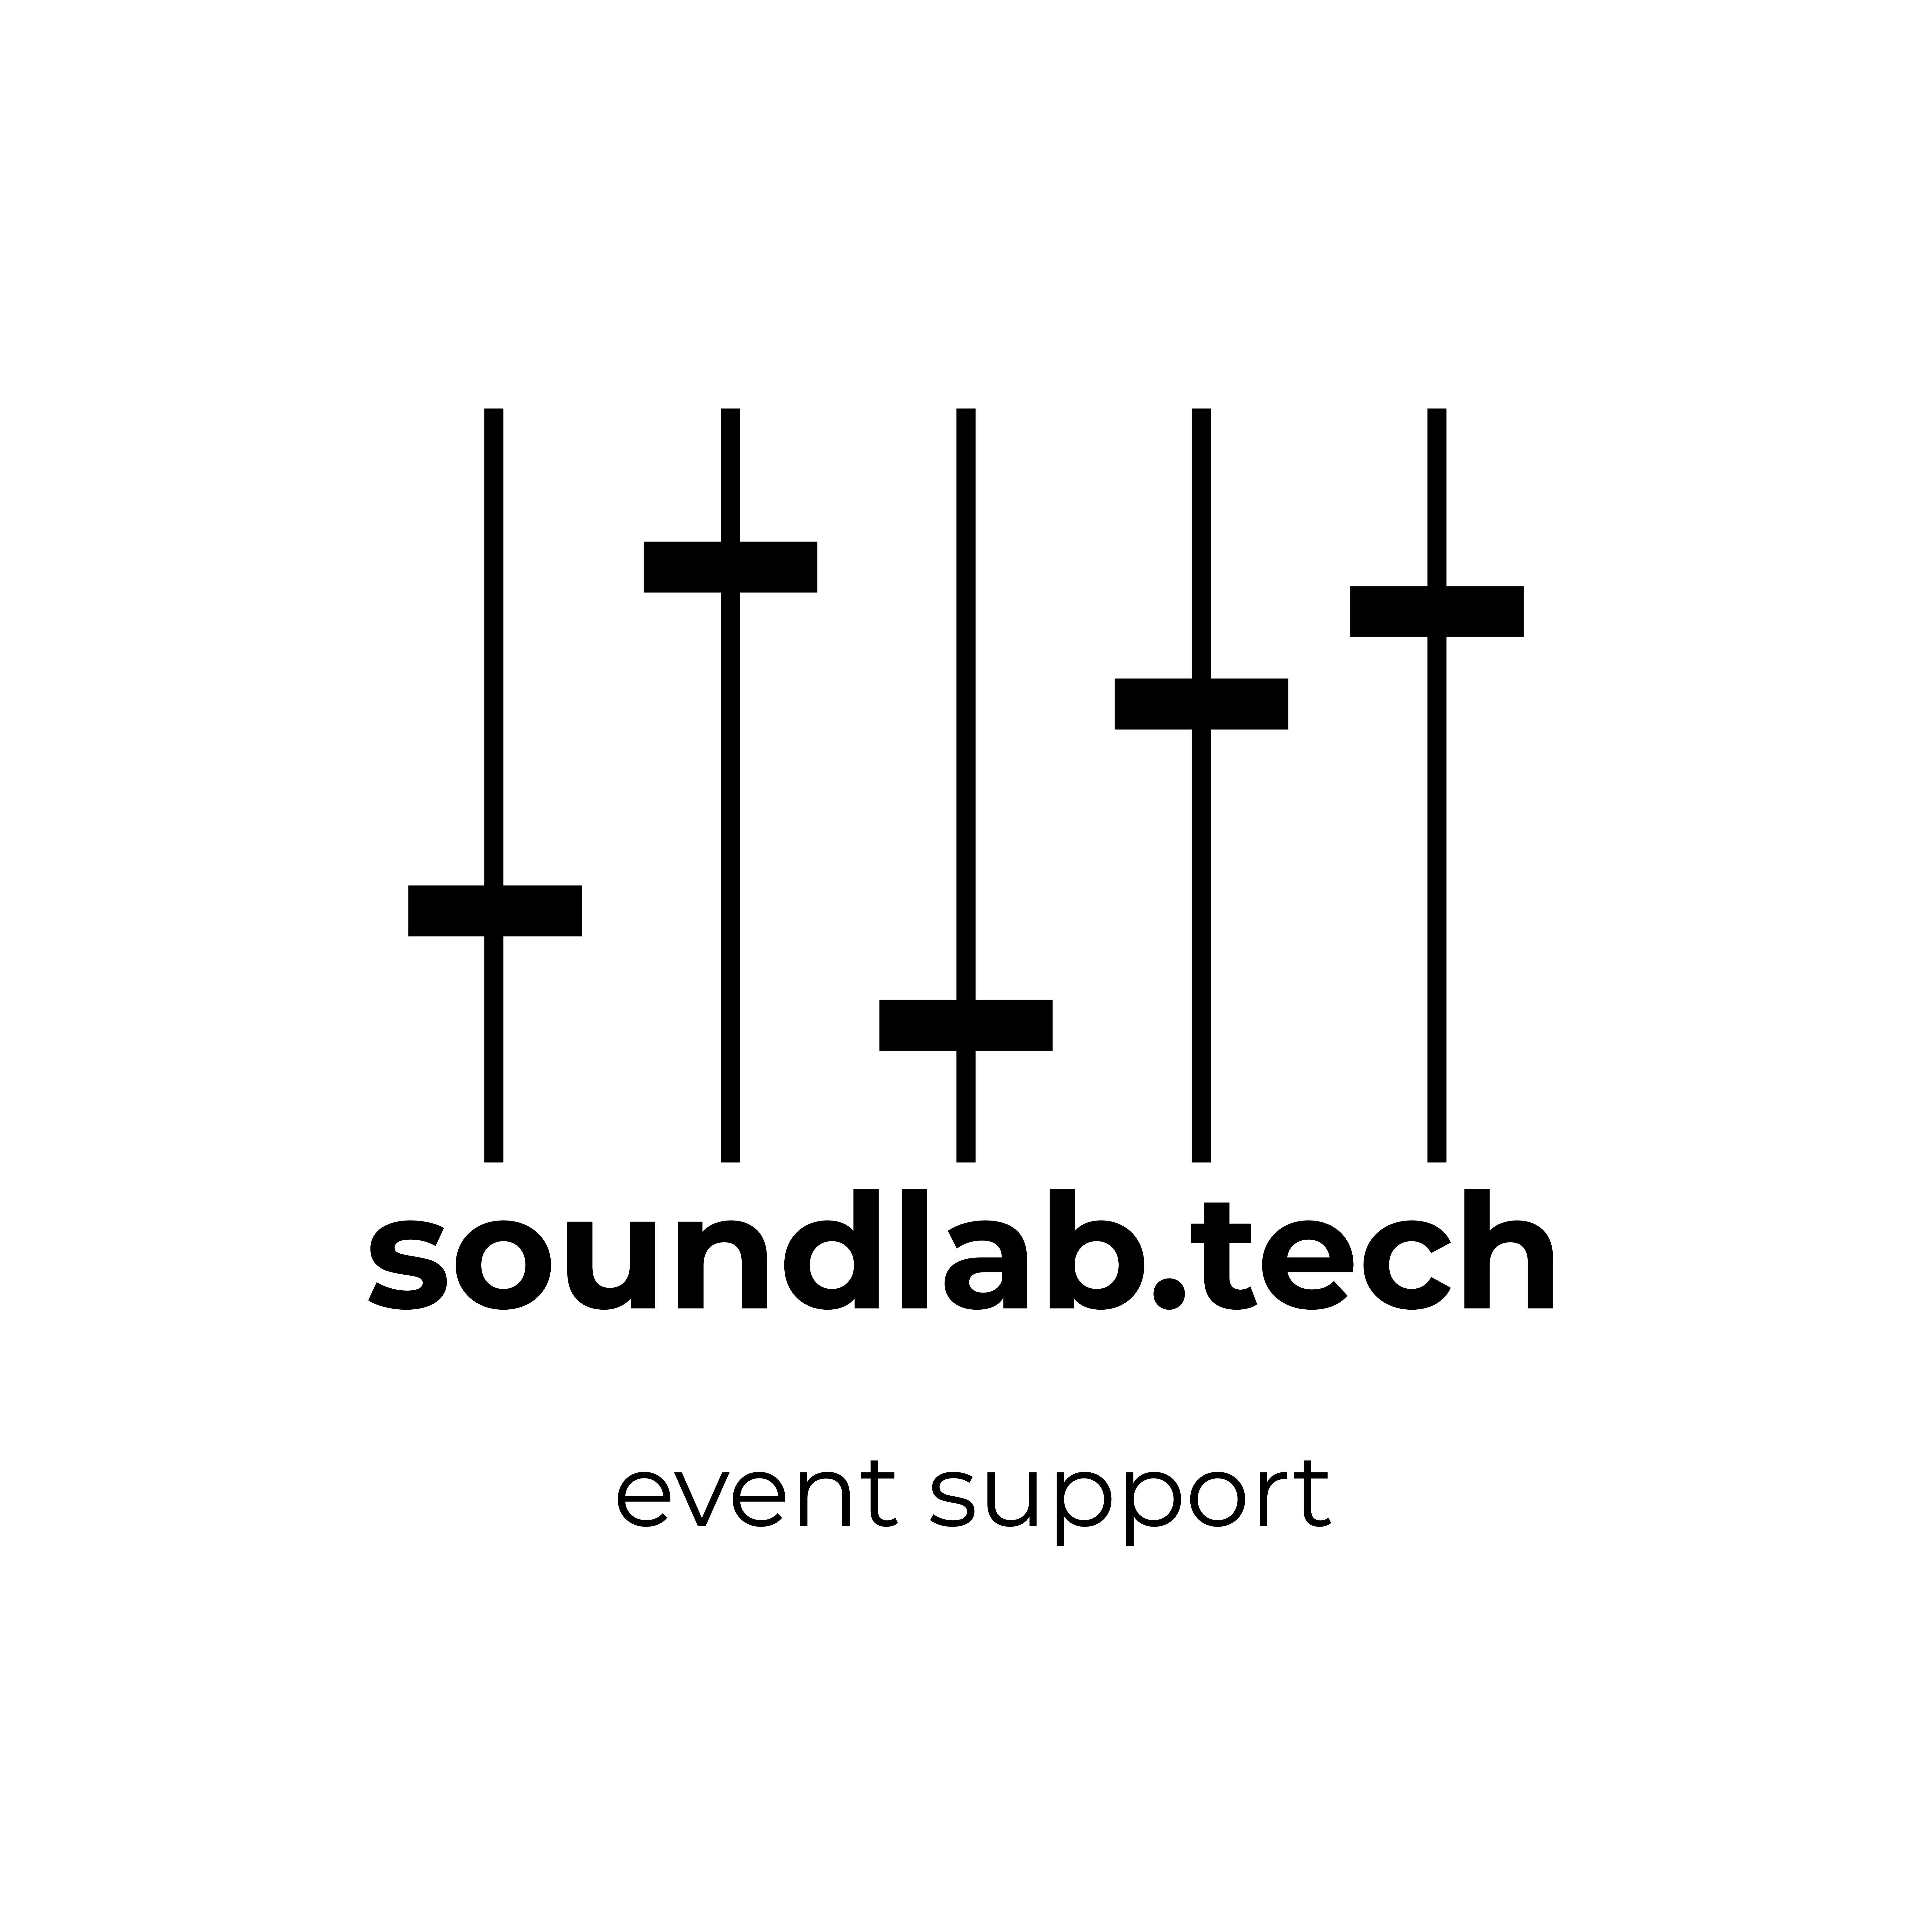 Soundlab – event support